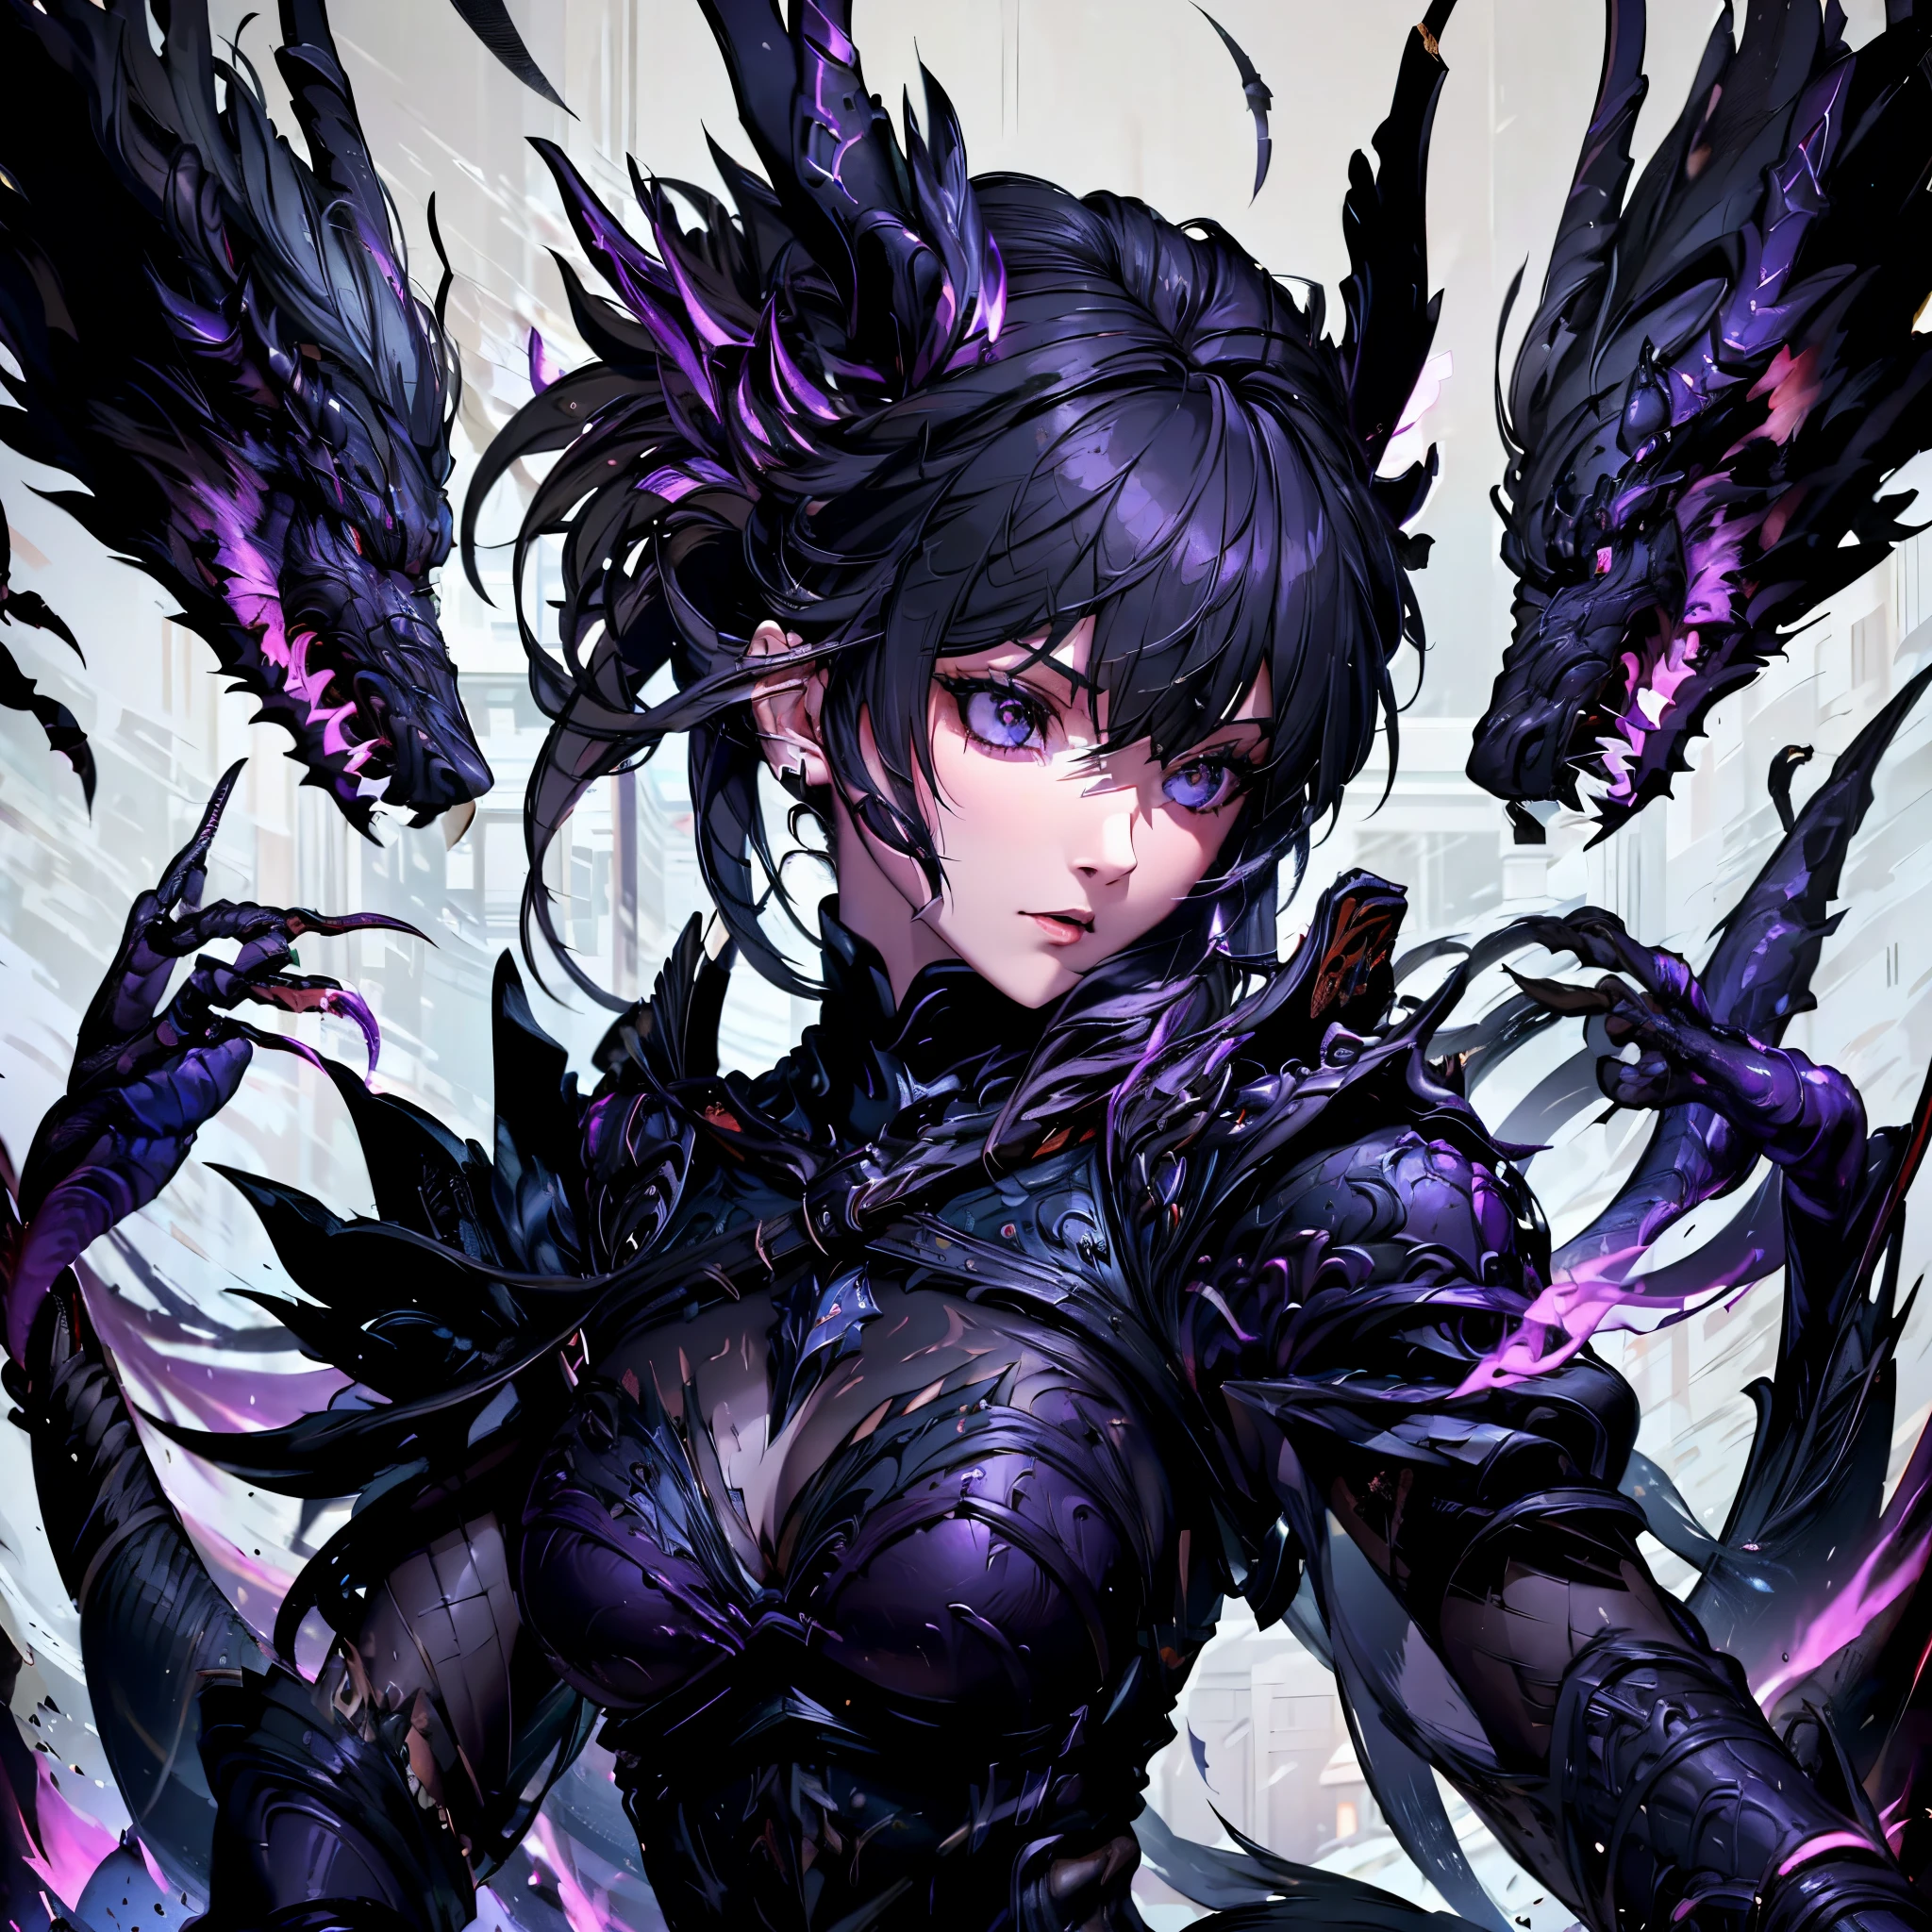 黒い鎧を着た少女. 彼女は鋭い飾りだ. 二匹の黒竜が彼女を背後から襲う.. シャープヘアオーナメント. 引き裂かれた羽. 鋭い爪. 彼女は紫の炎に染まる.